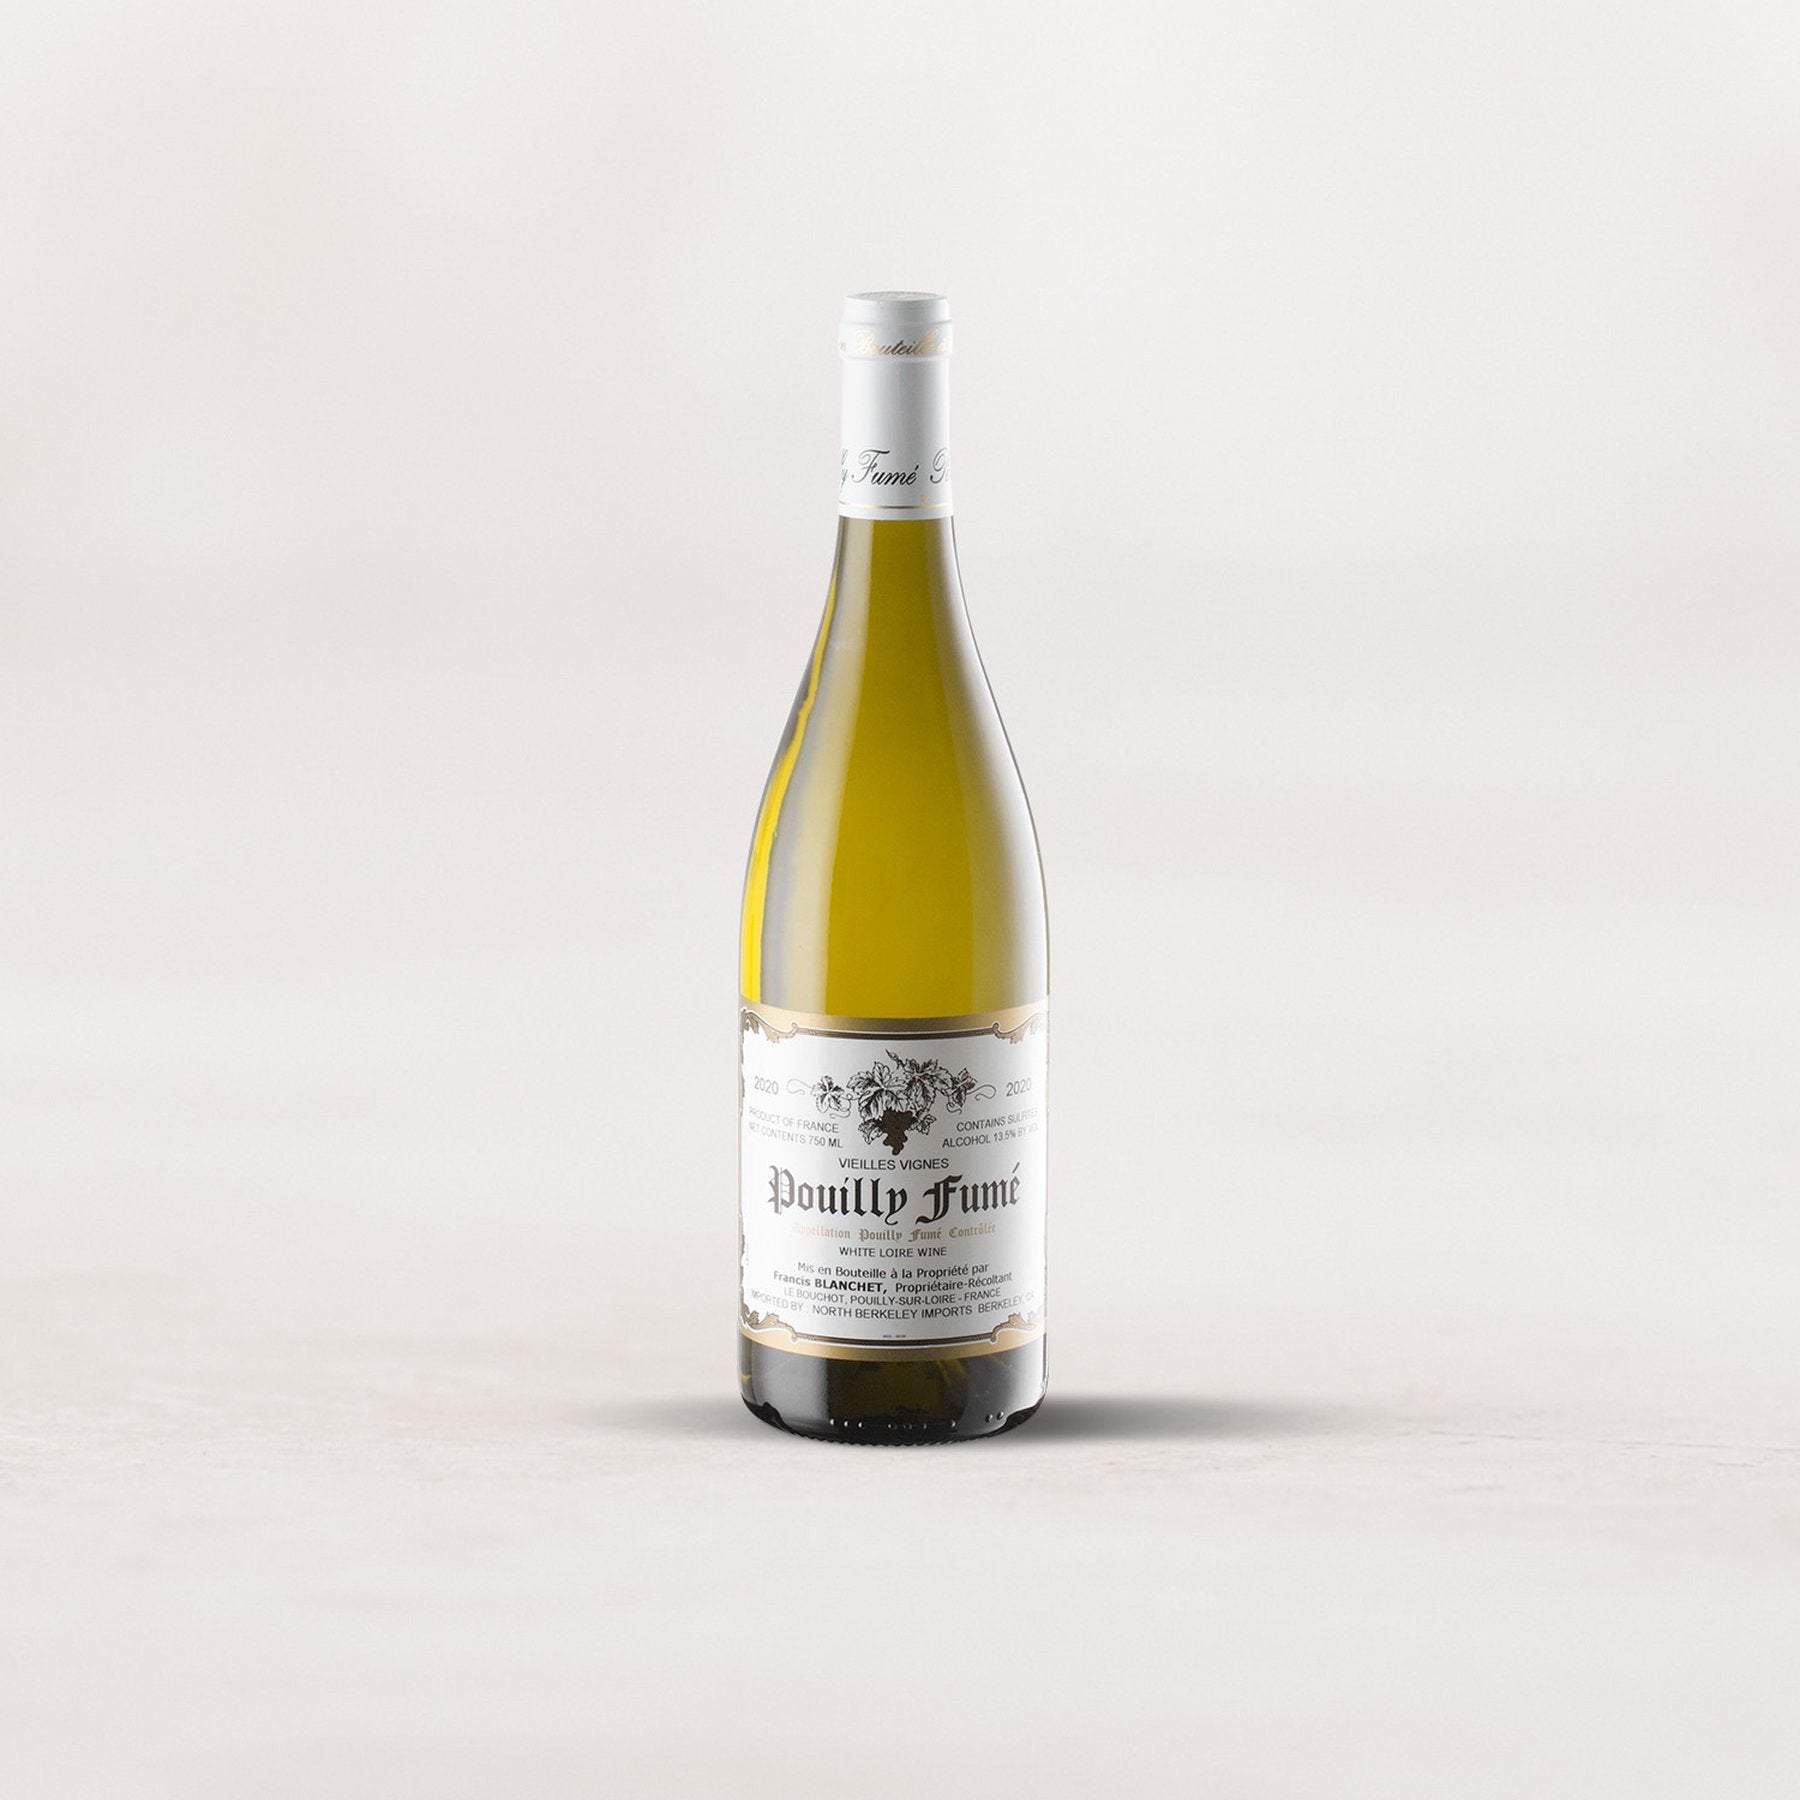 Francis Blanchet, Pouilly-Fumé “Vieilles Vignes”